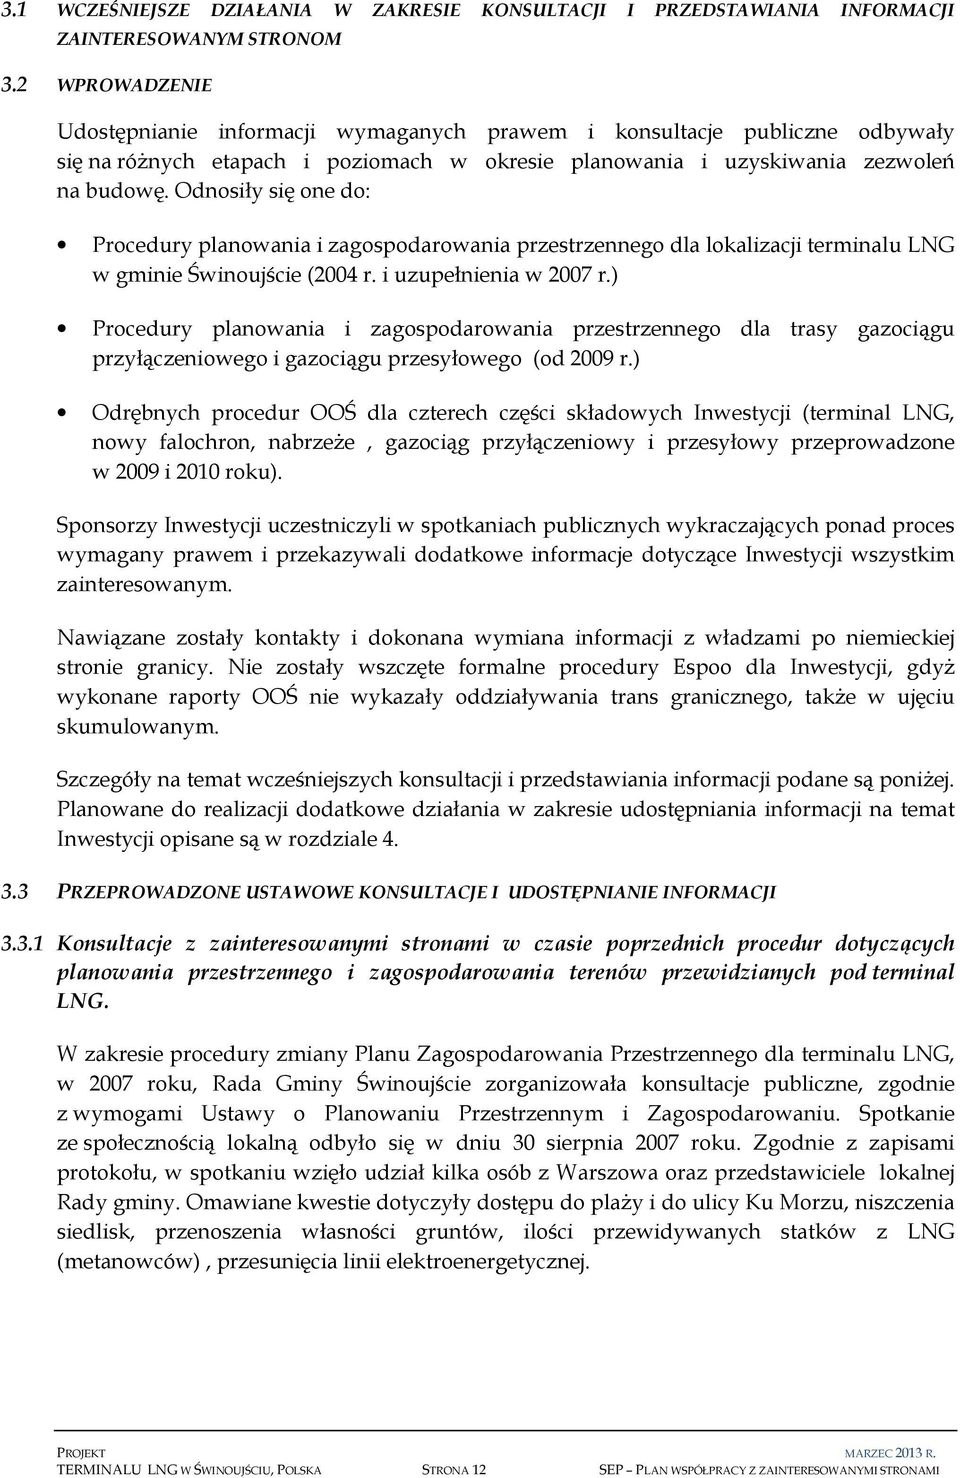 Odnosiły się one do: Procedury planowania i zagospodarowania przestrzennego dla lokalizacji terminalu LNG w gminie Świnoujście (2004 r. i uzupełnienia w 2007 r.